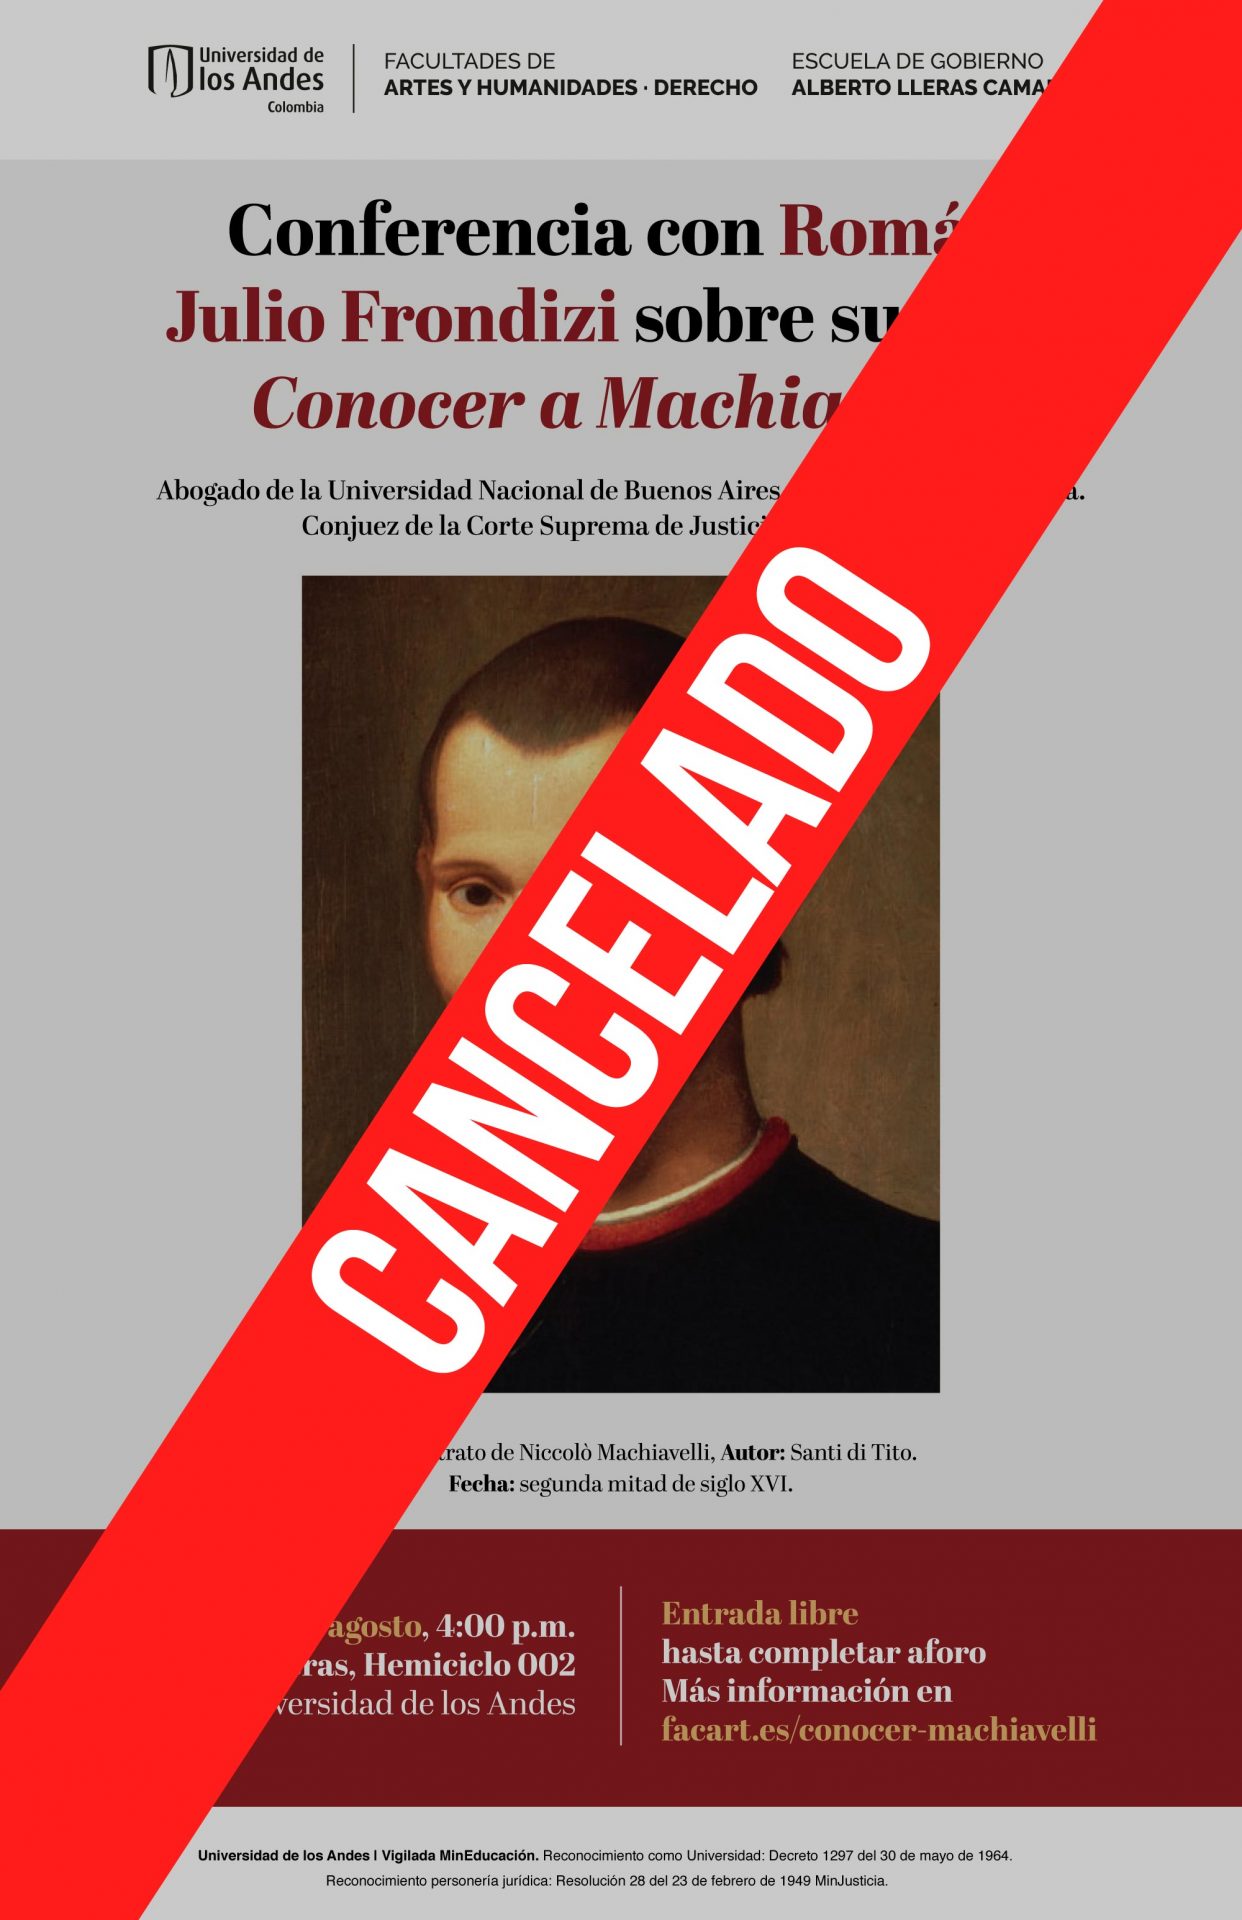 Cancelado - Conferencia con Román Julio Frondizi sobre su libro Conocer a Machiavelli